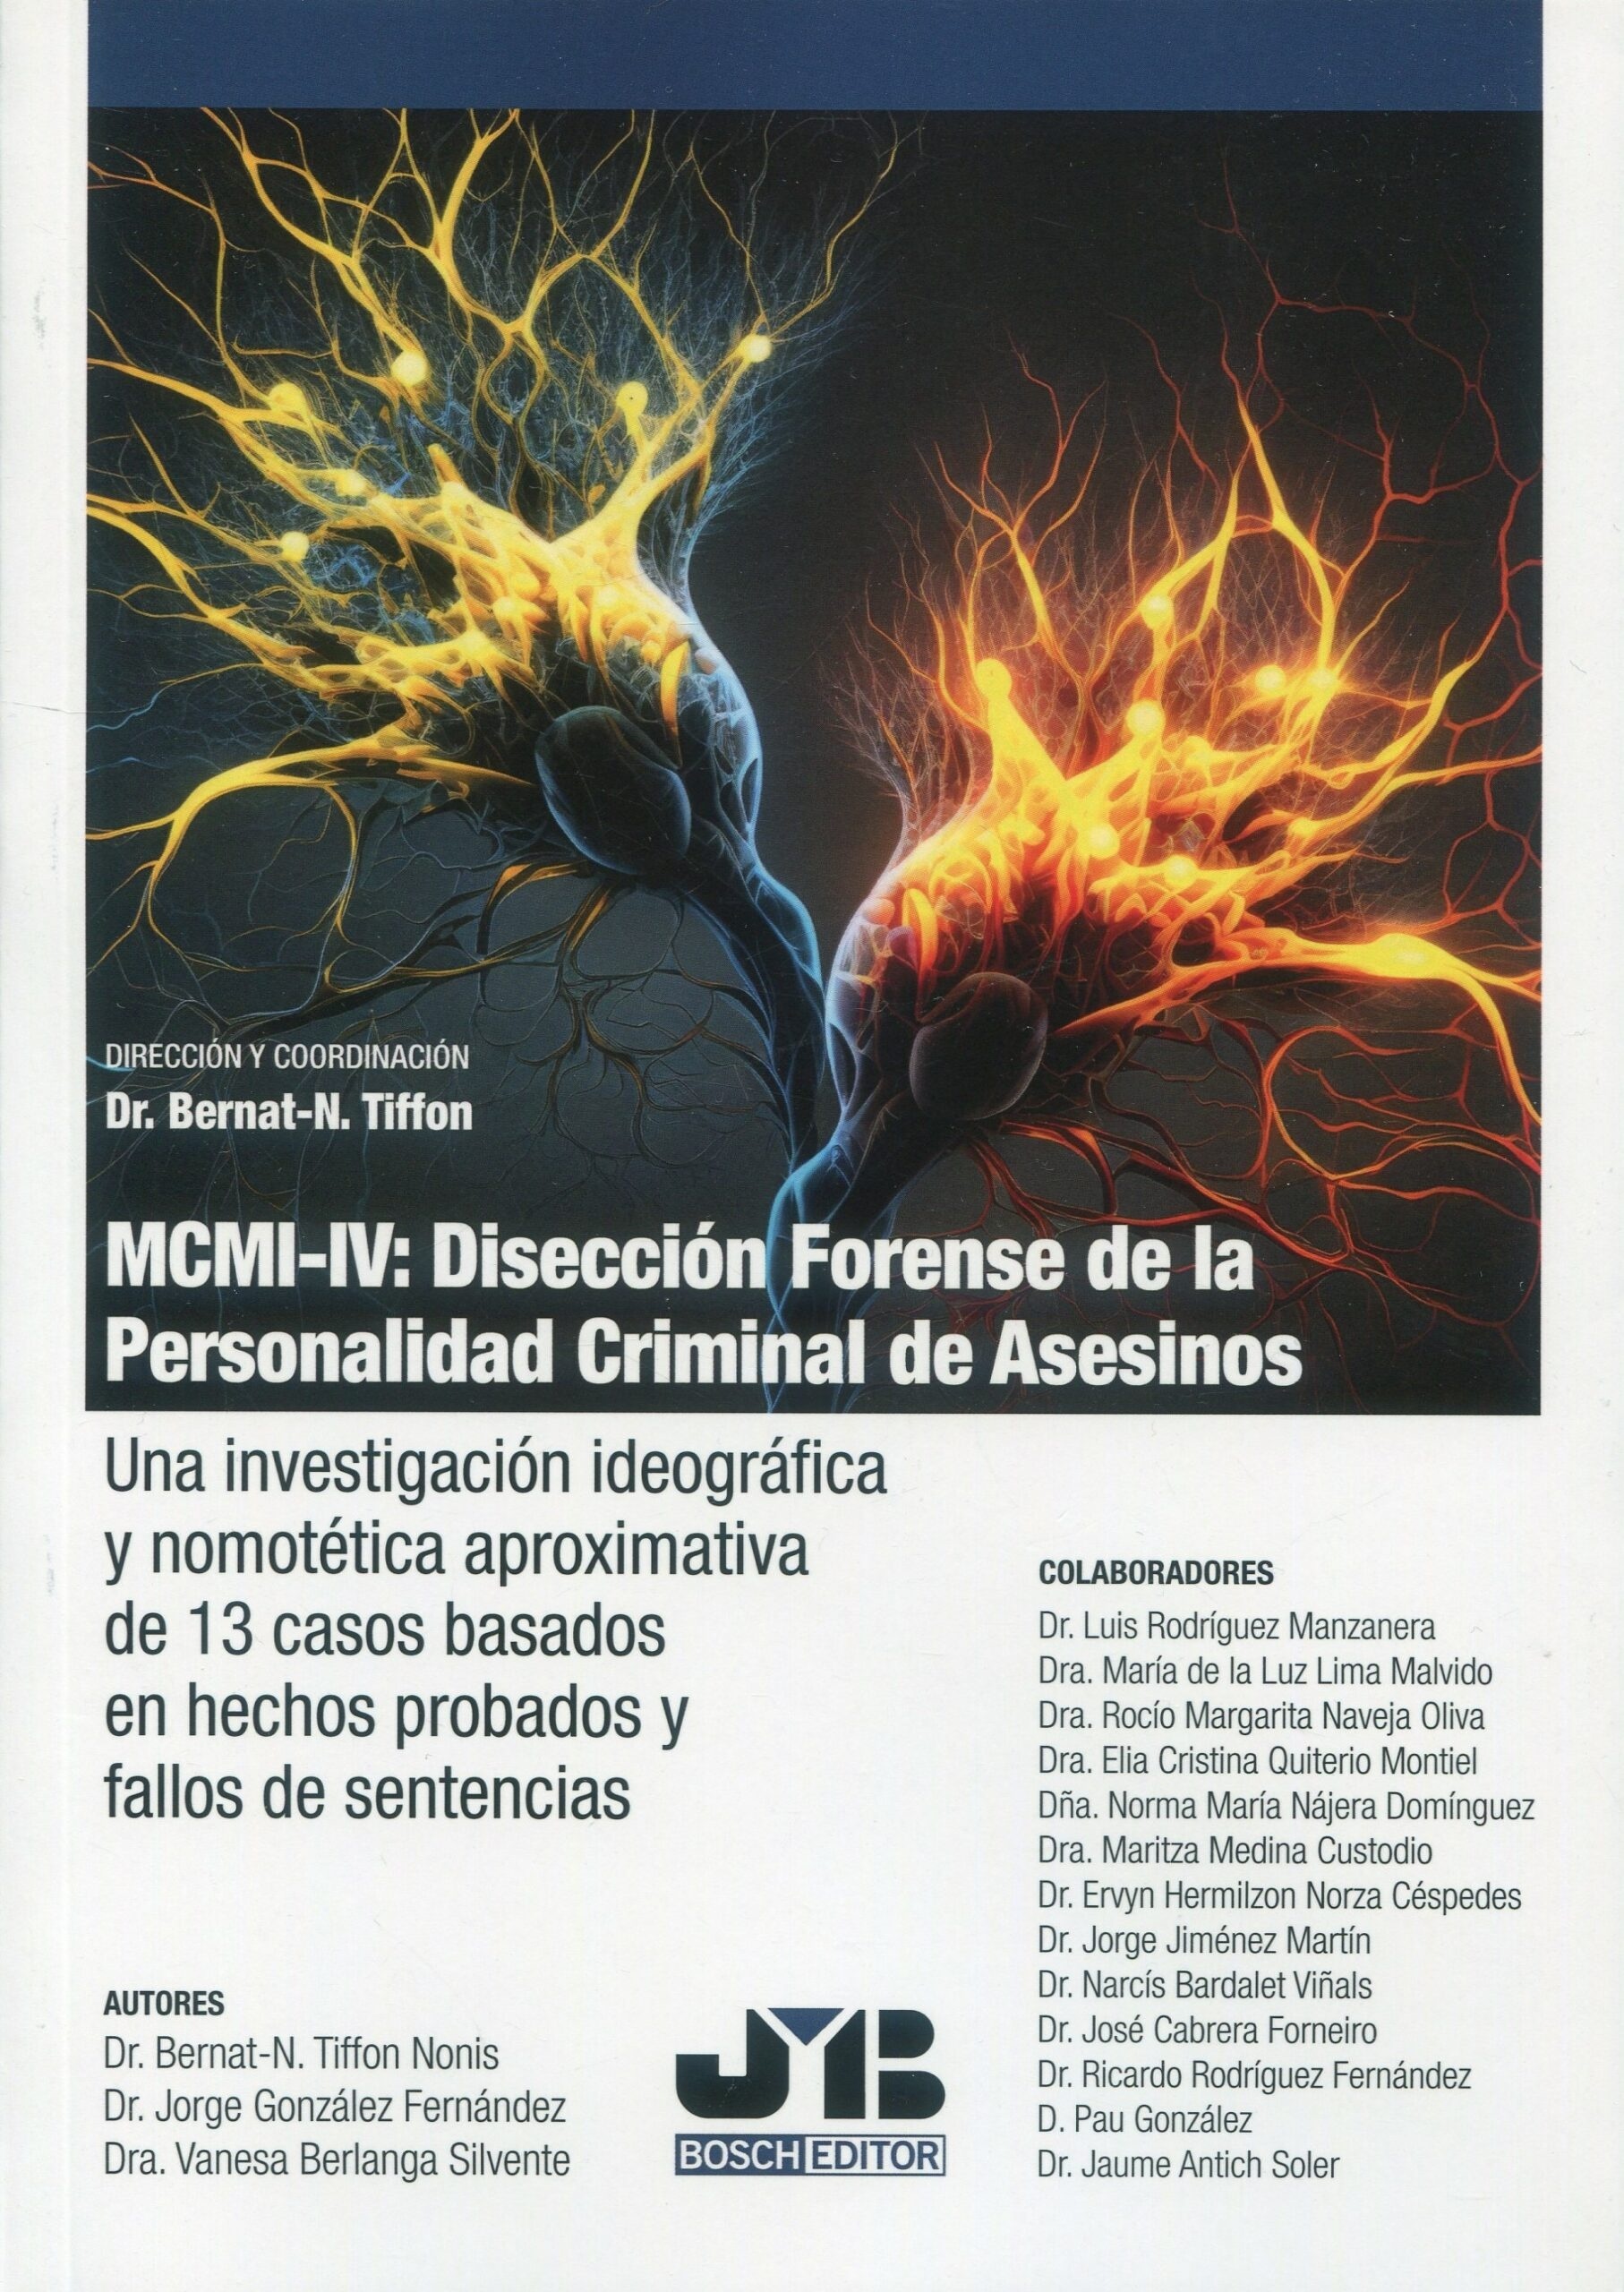 MCMI-IV: Disección forense de la personalidad criminal de asesinos "Una investigación ideográfica y nomotética aproximativa de 13 casos basados en hechos probados y fallos de sentencias"